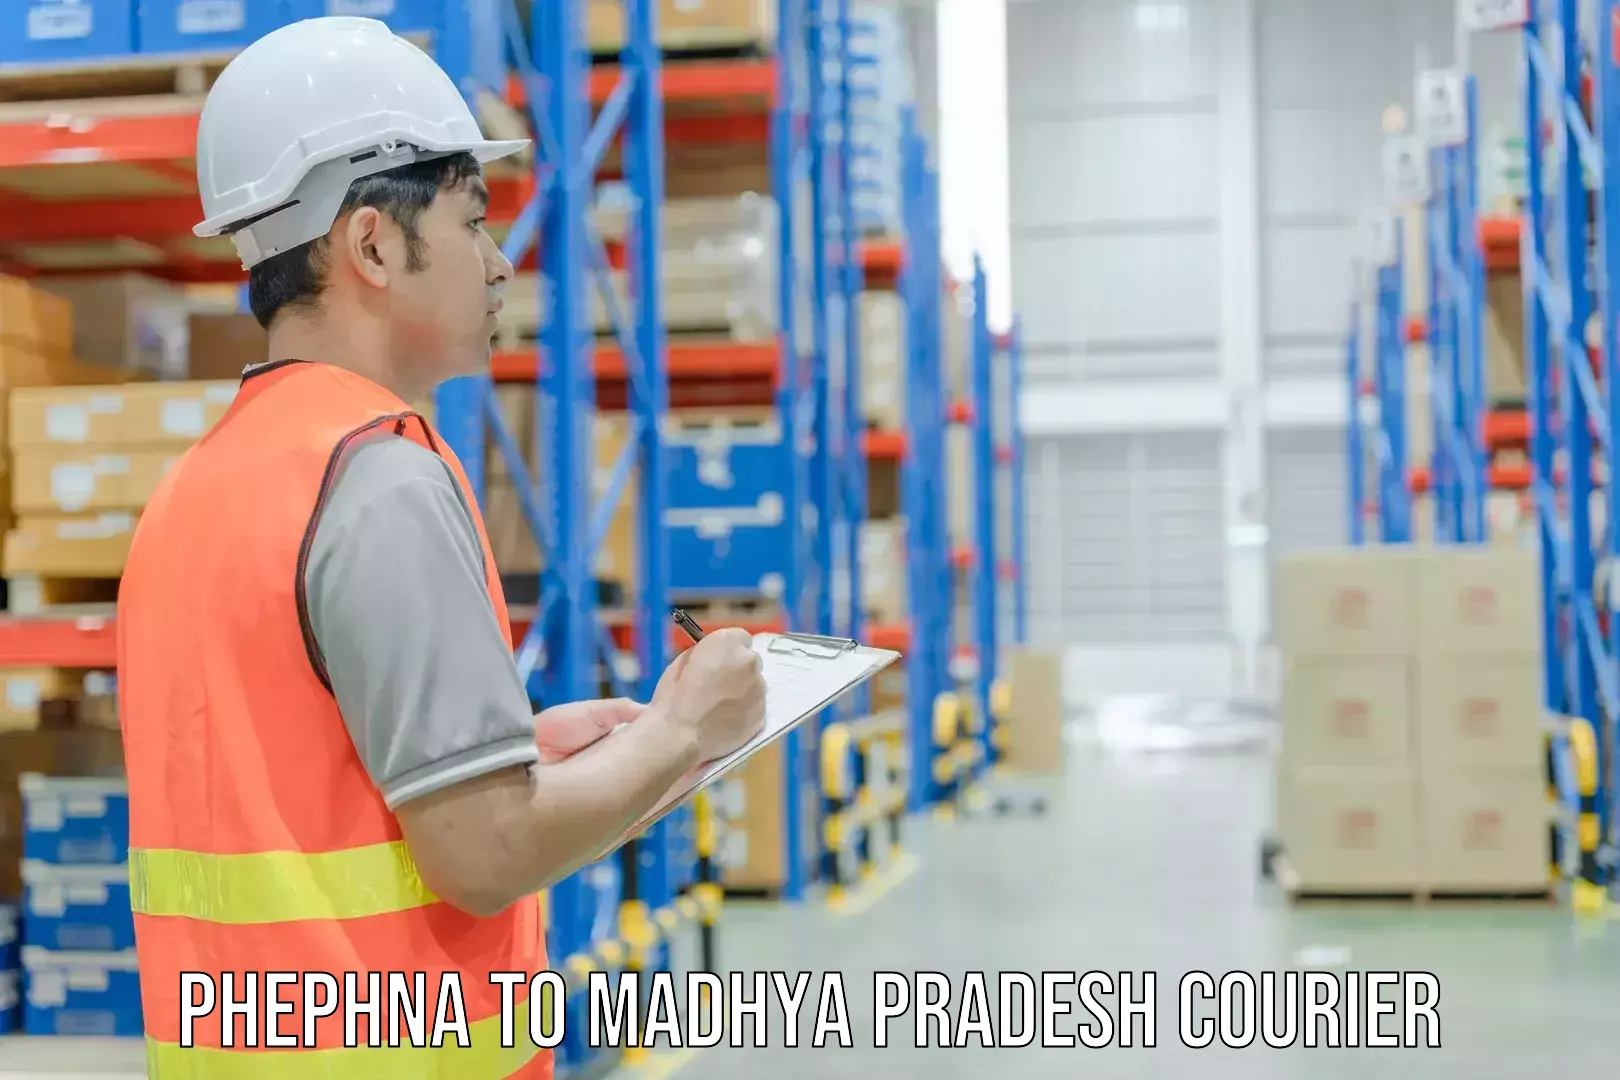 Regular parcel service Phephna to Kukshi